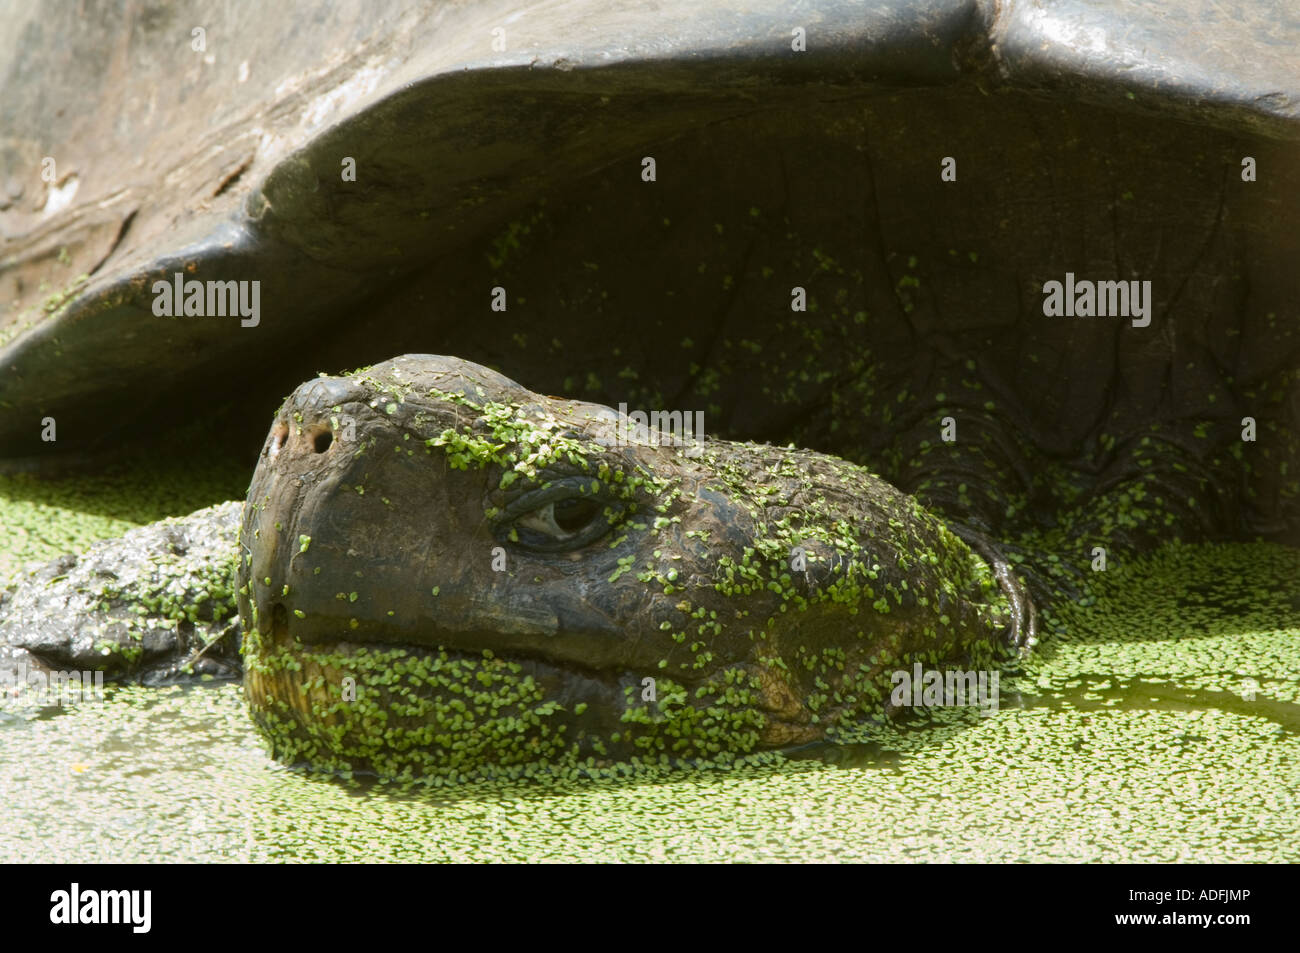 Tortuga Gigante de las Galápagos (Geochelone elephantopus porteri) se sumerge en la piscina con la lemna, El Chato, Santa Cruz, Galápagos Foto de stock